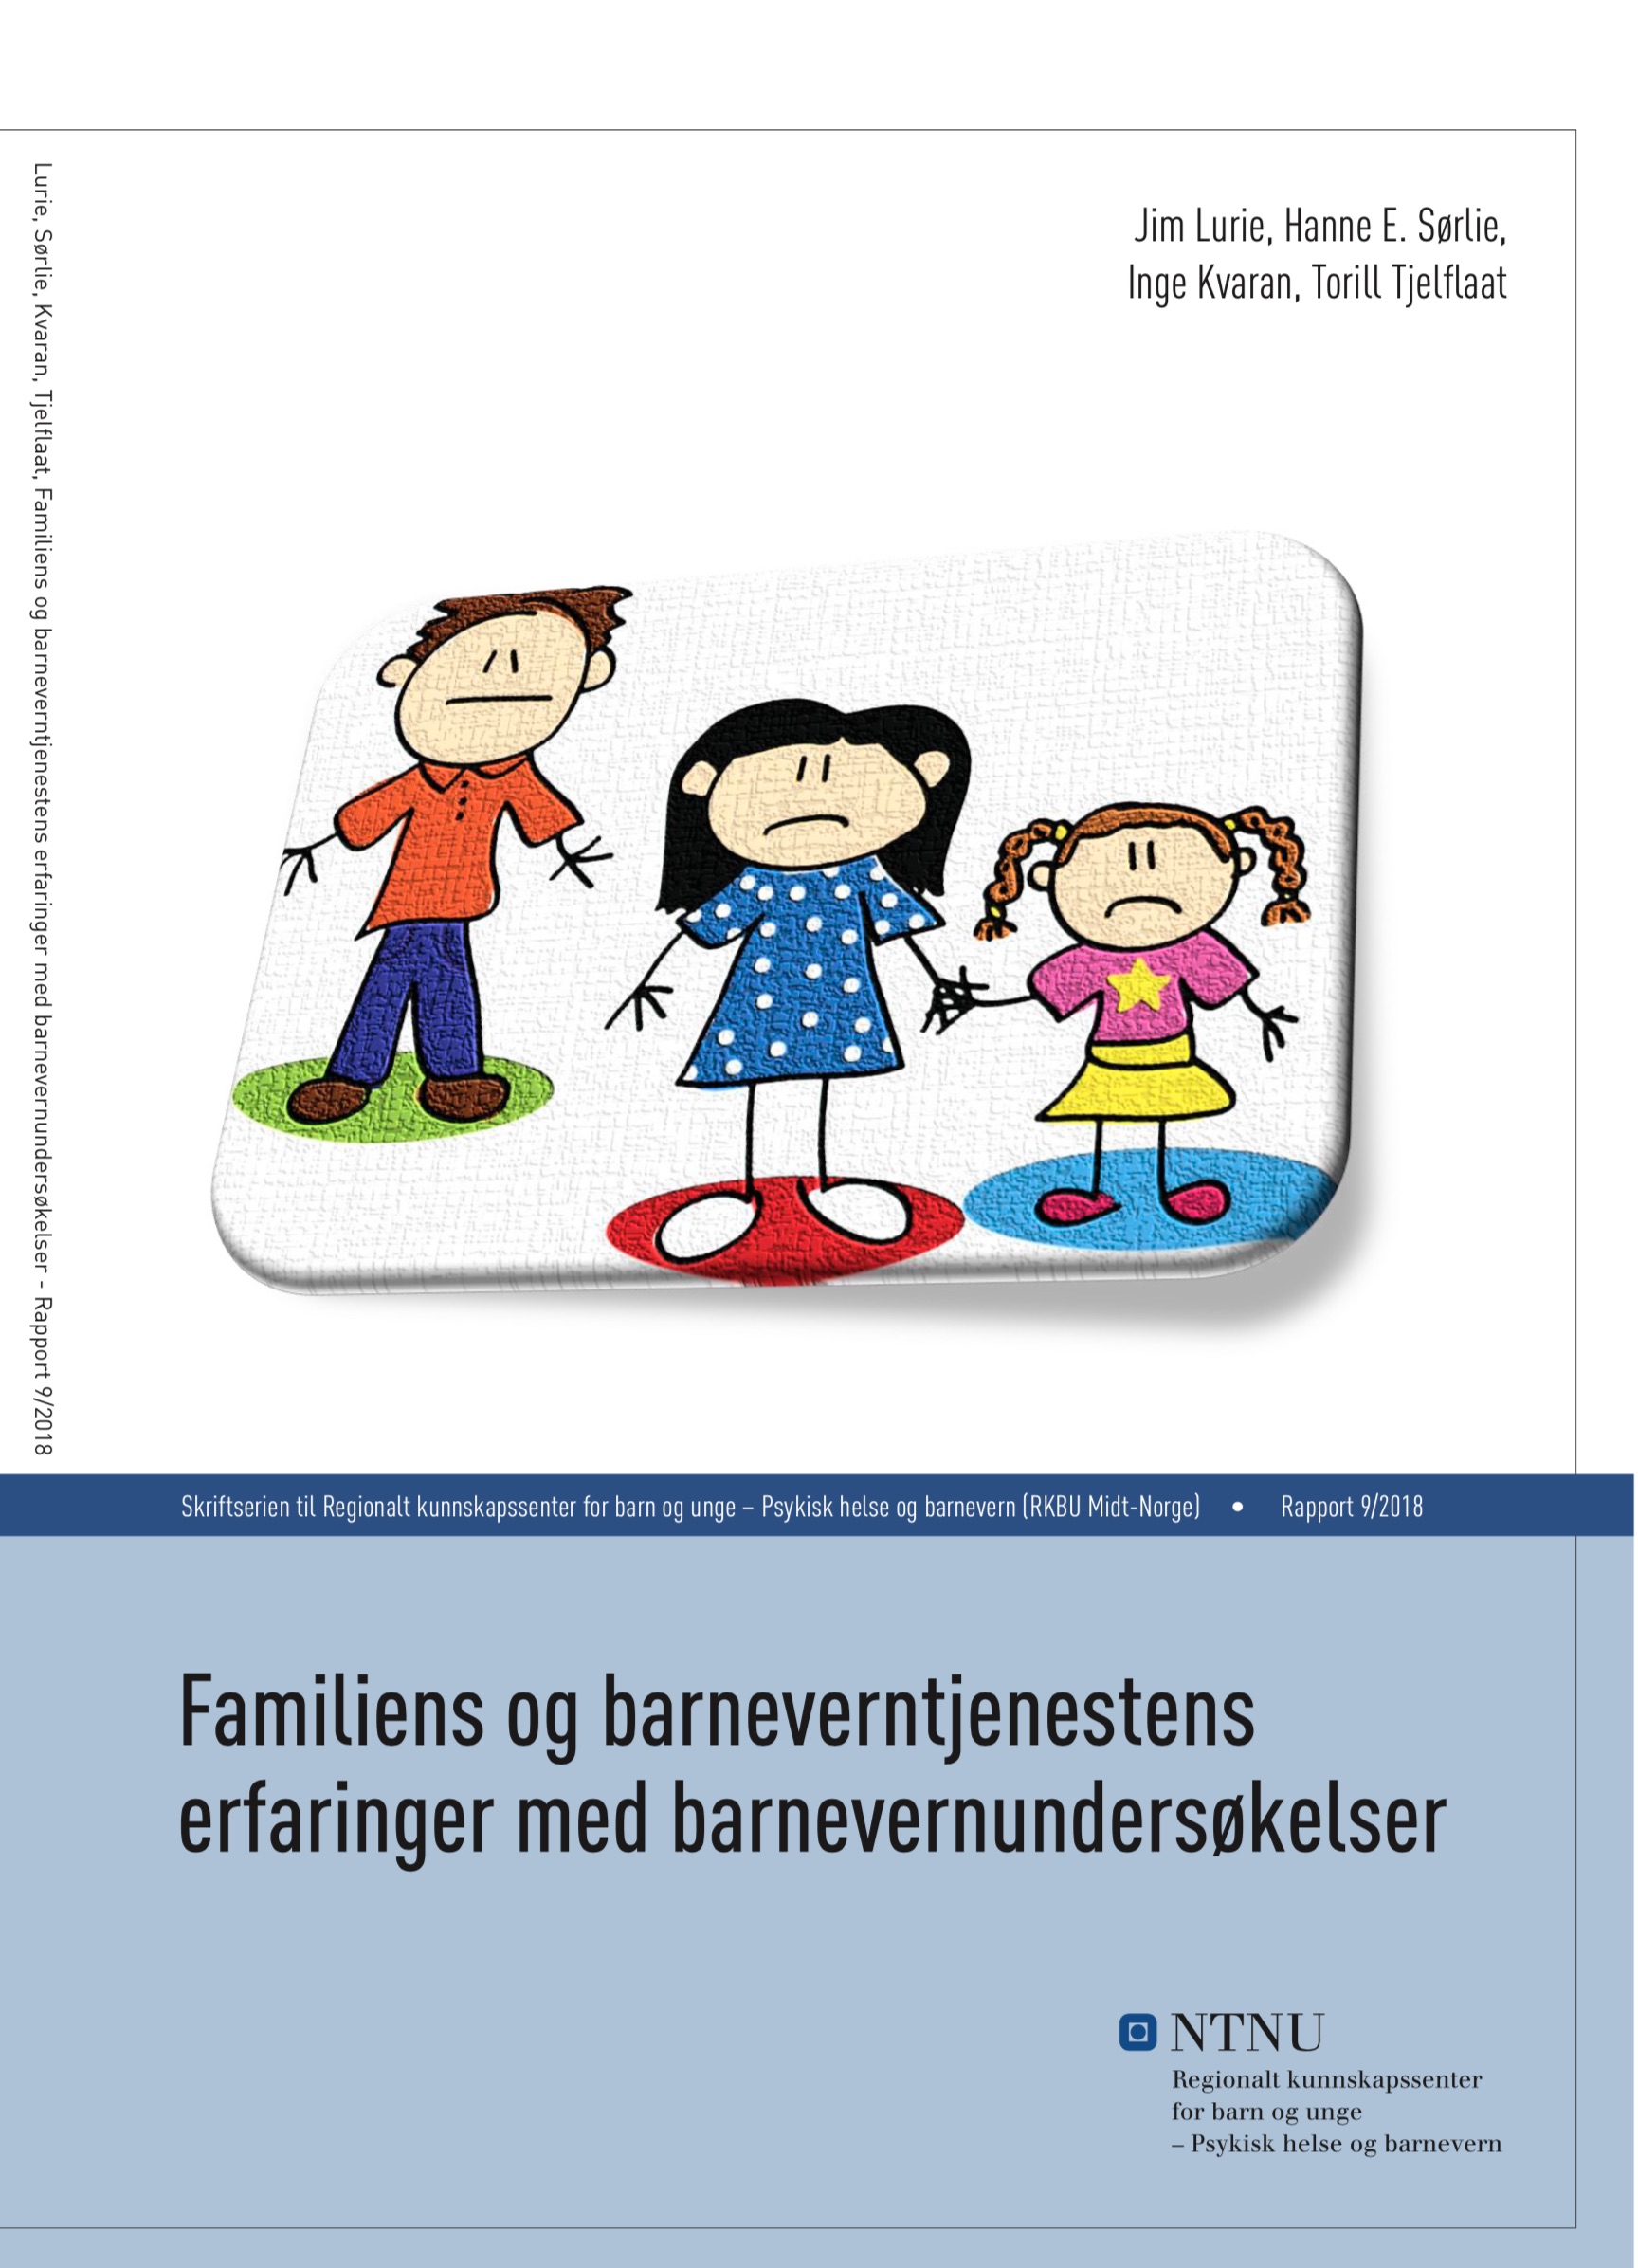 Rapport 9/2018 - Familiens og barneverntjenestens erfaringer med barnevernundersøkelser